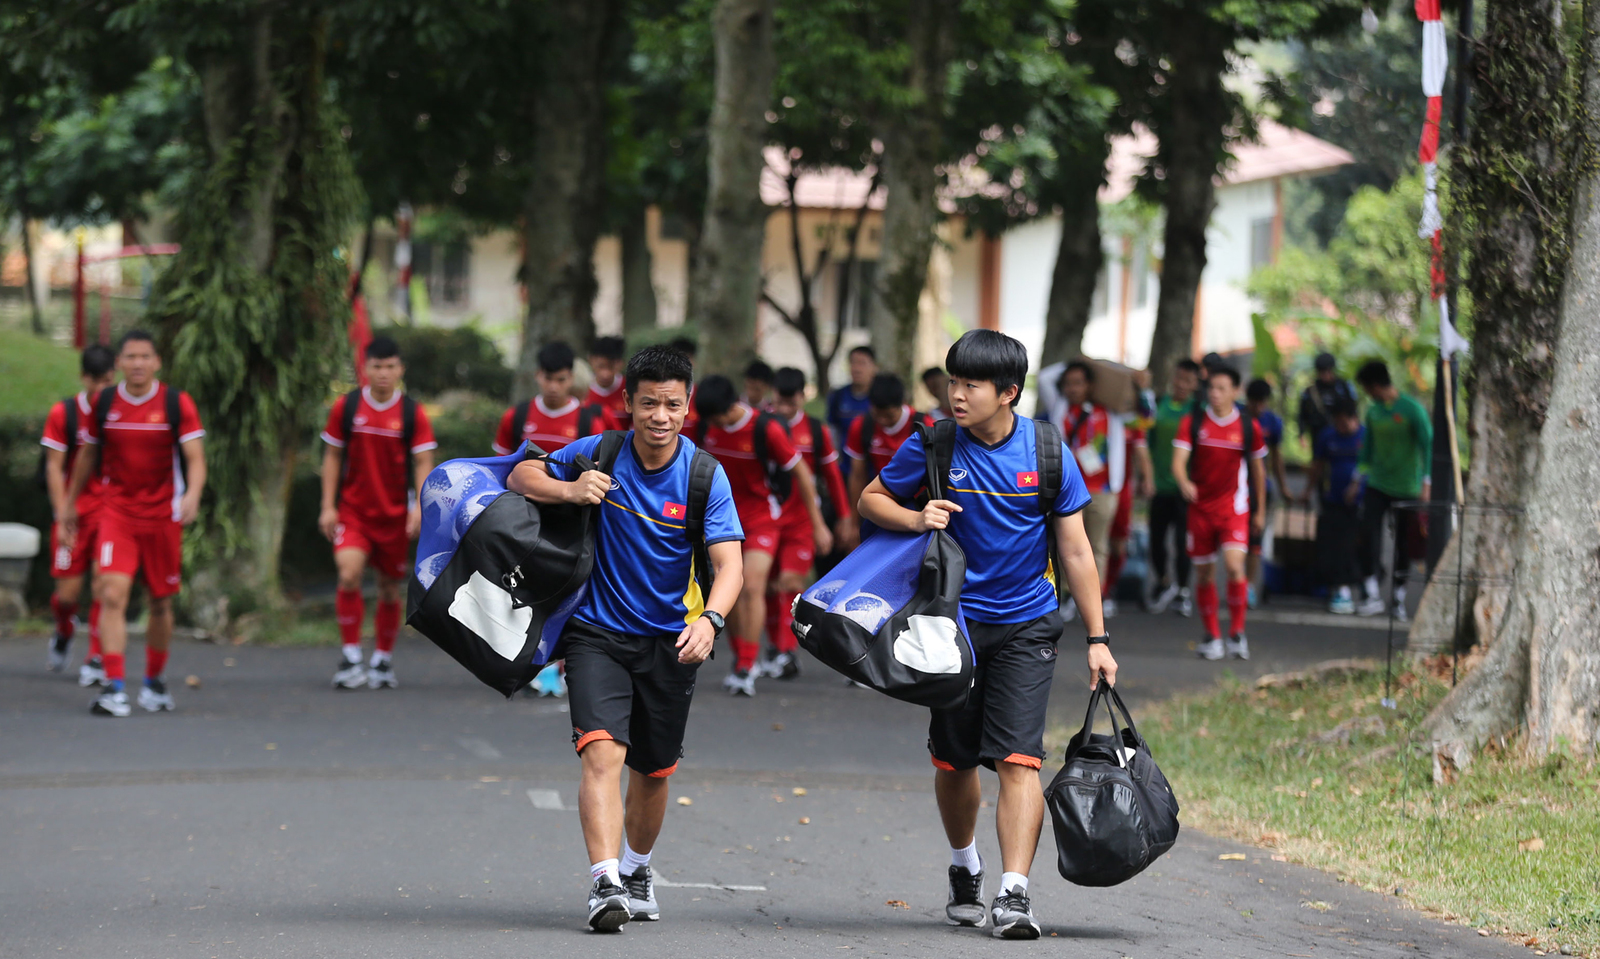 Sau một ngày nghỉ ngơi, sáng nay U23 Việt Nam bước vào quá trình tập luyện chuẩn bị cho trận tranh huy chương đồng với UAE. Trận đấu diễn ra lúc 15h ngày mai 1/9. 